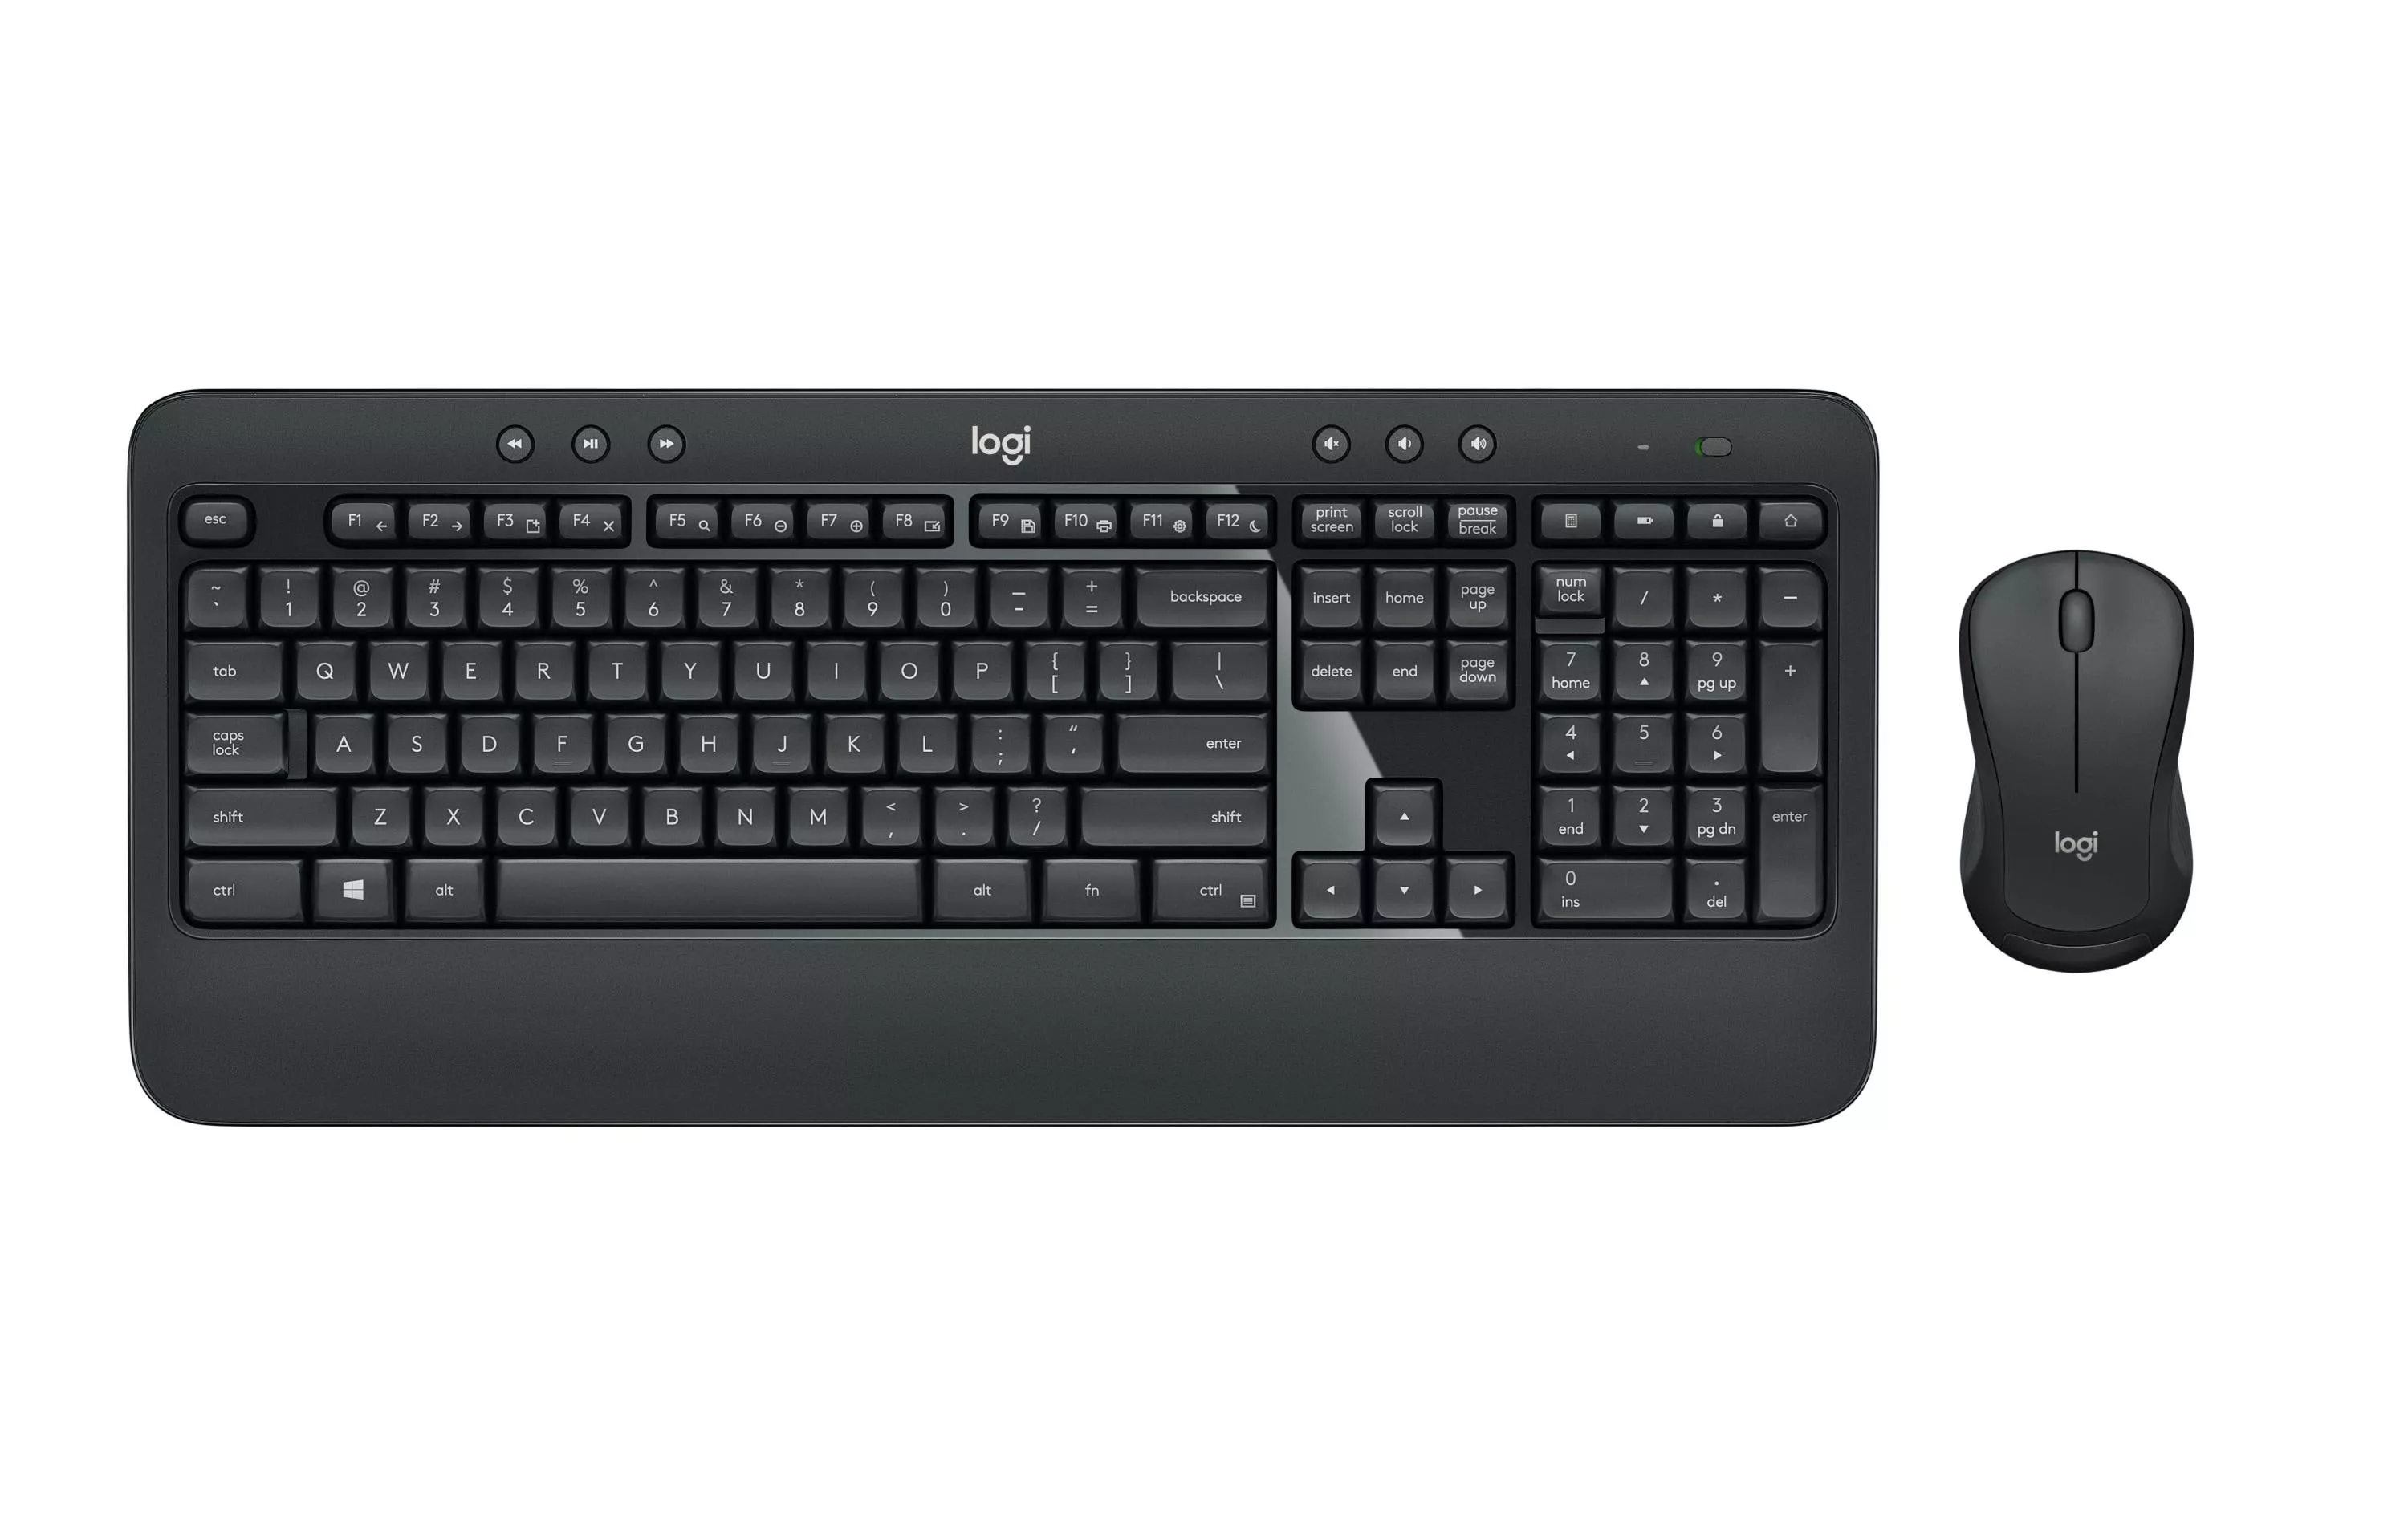 Tastatur-Maus-Set MK540 Advanced US-Layout, für Windows